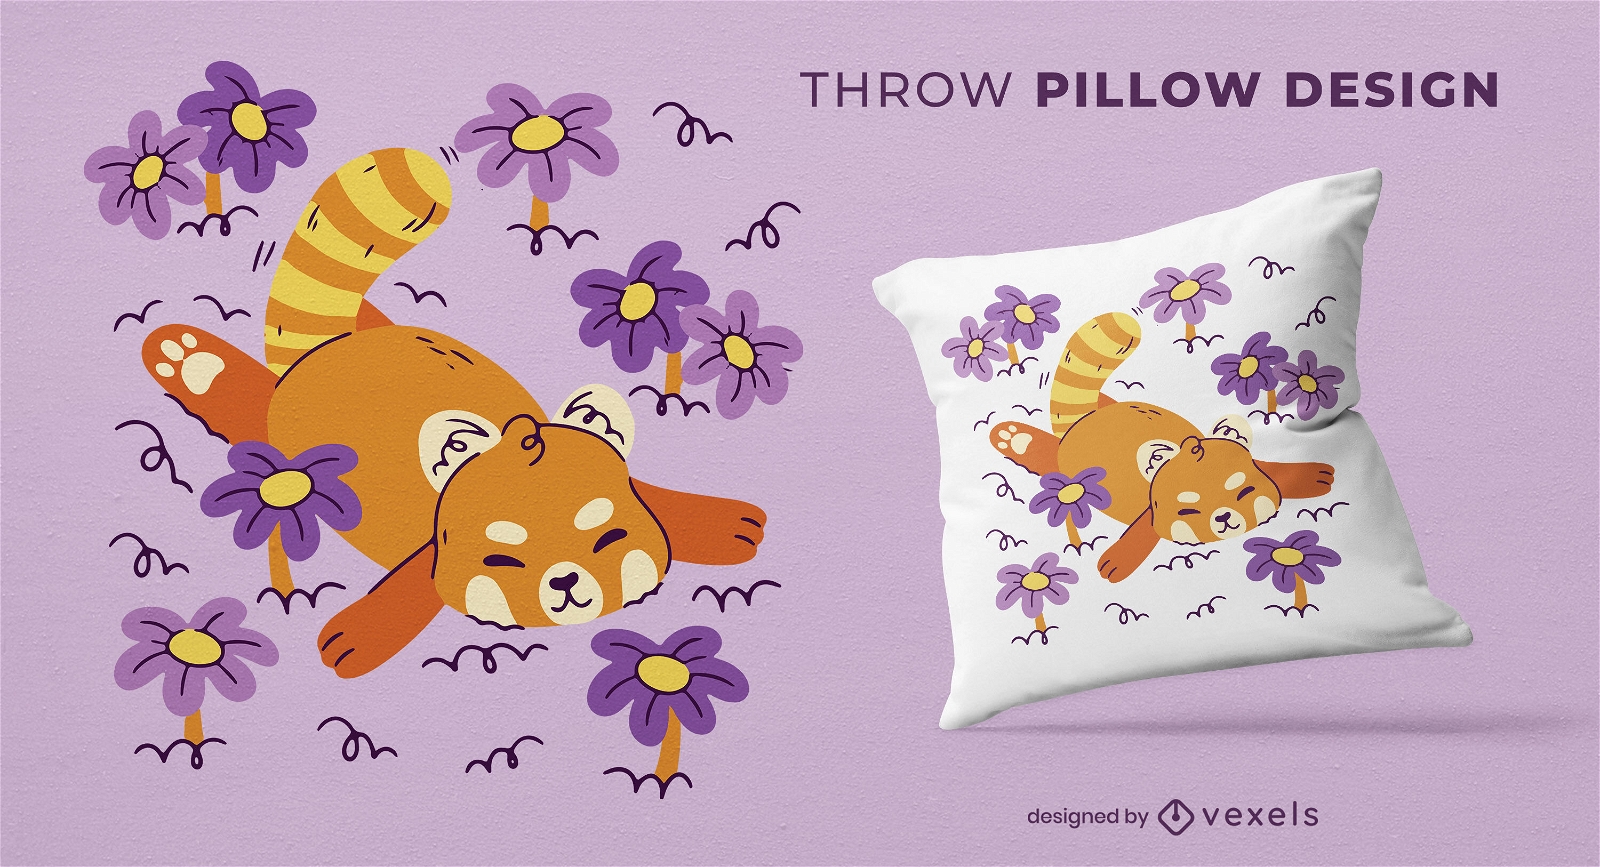 Red panda nap throw pillow design